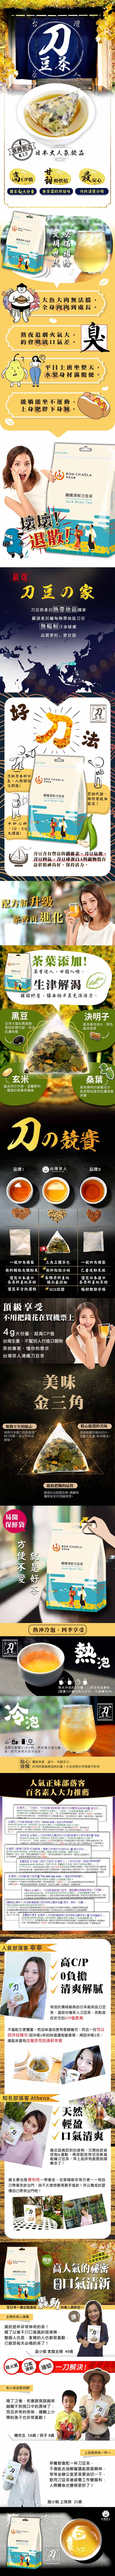 台灣茶人 切油斬臭輕纖刀豆茶3角茶包(18入/袋)